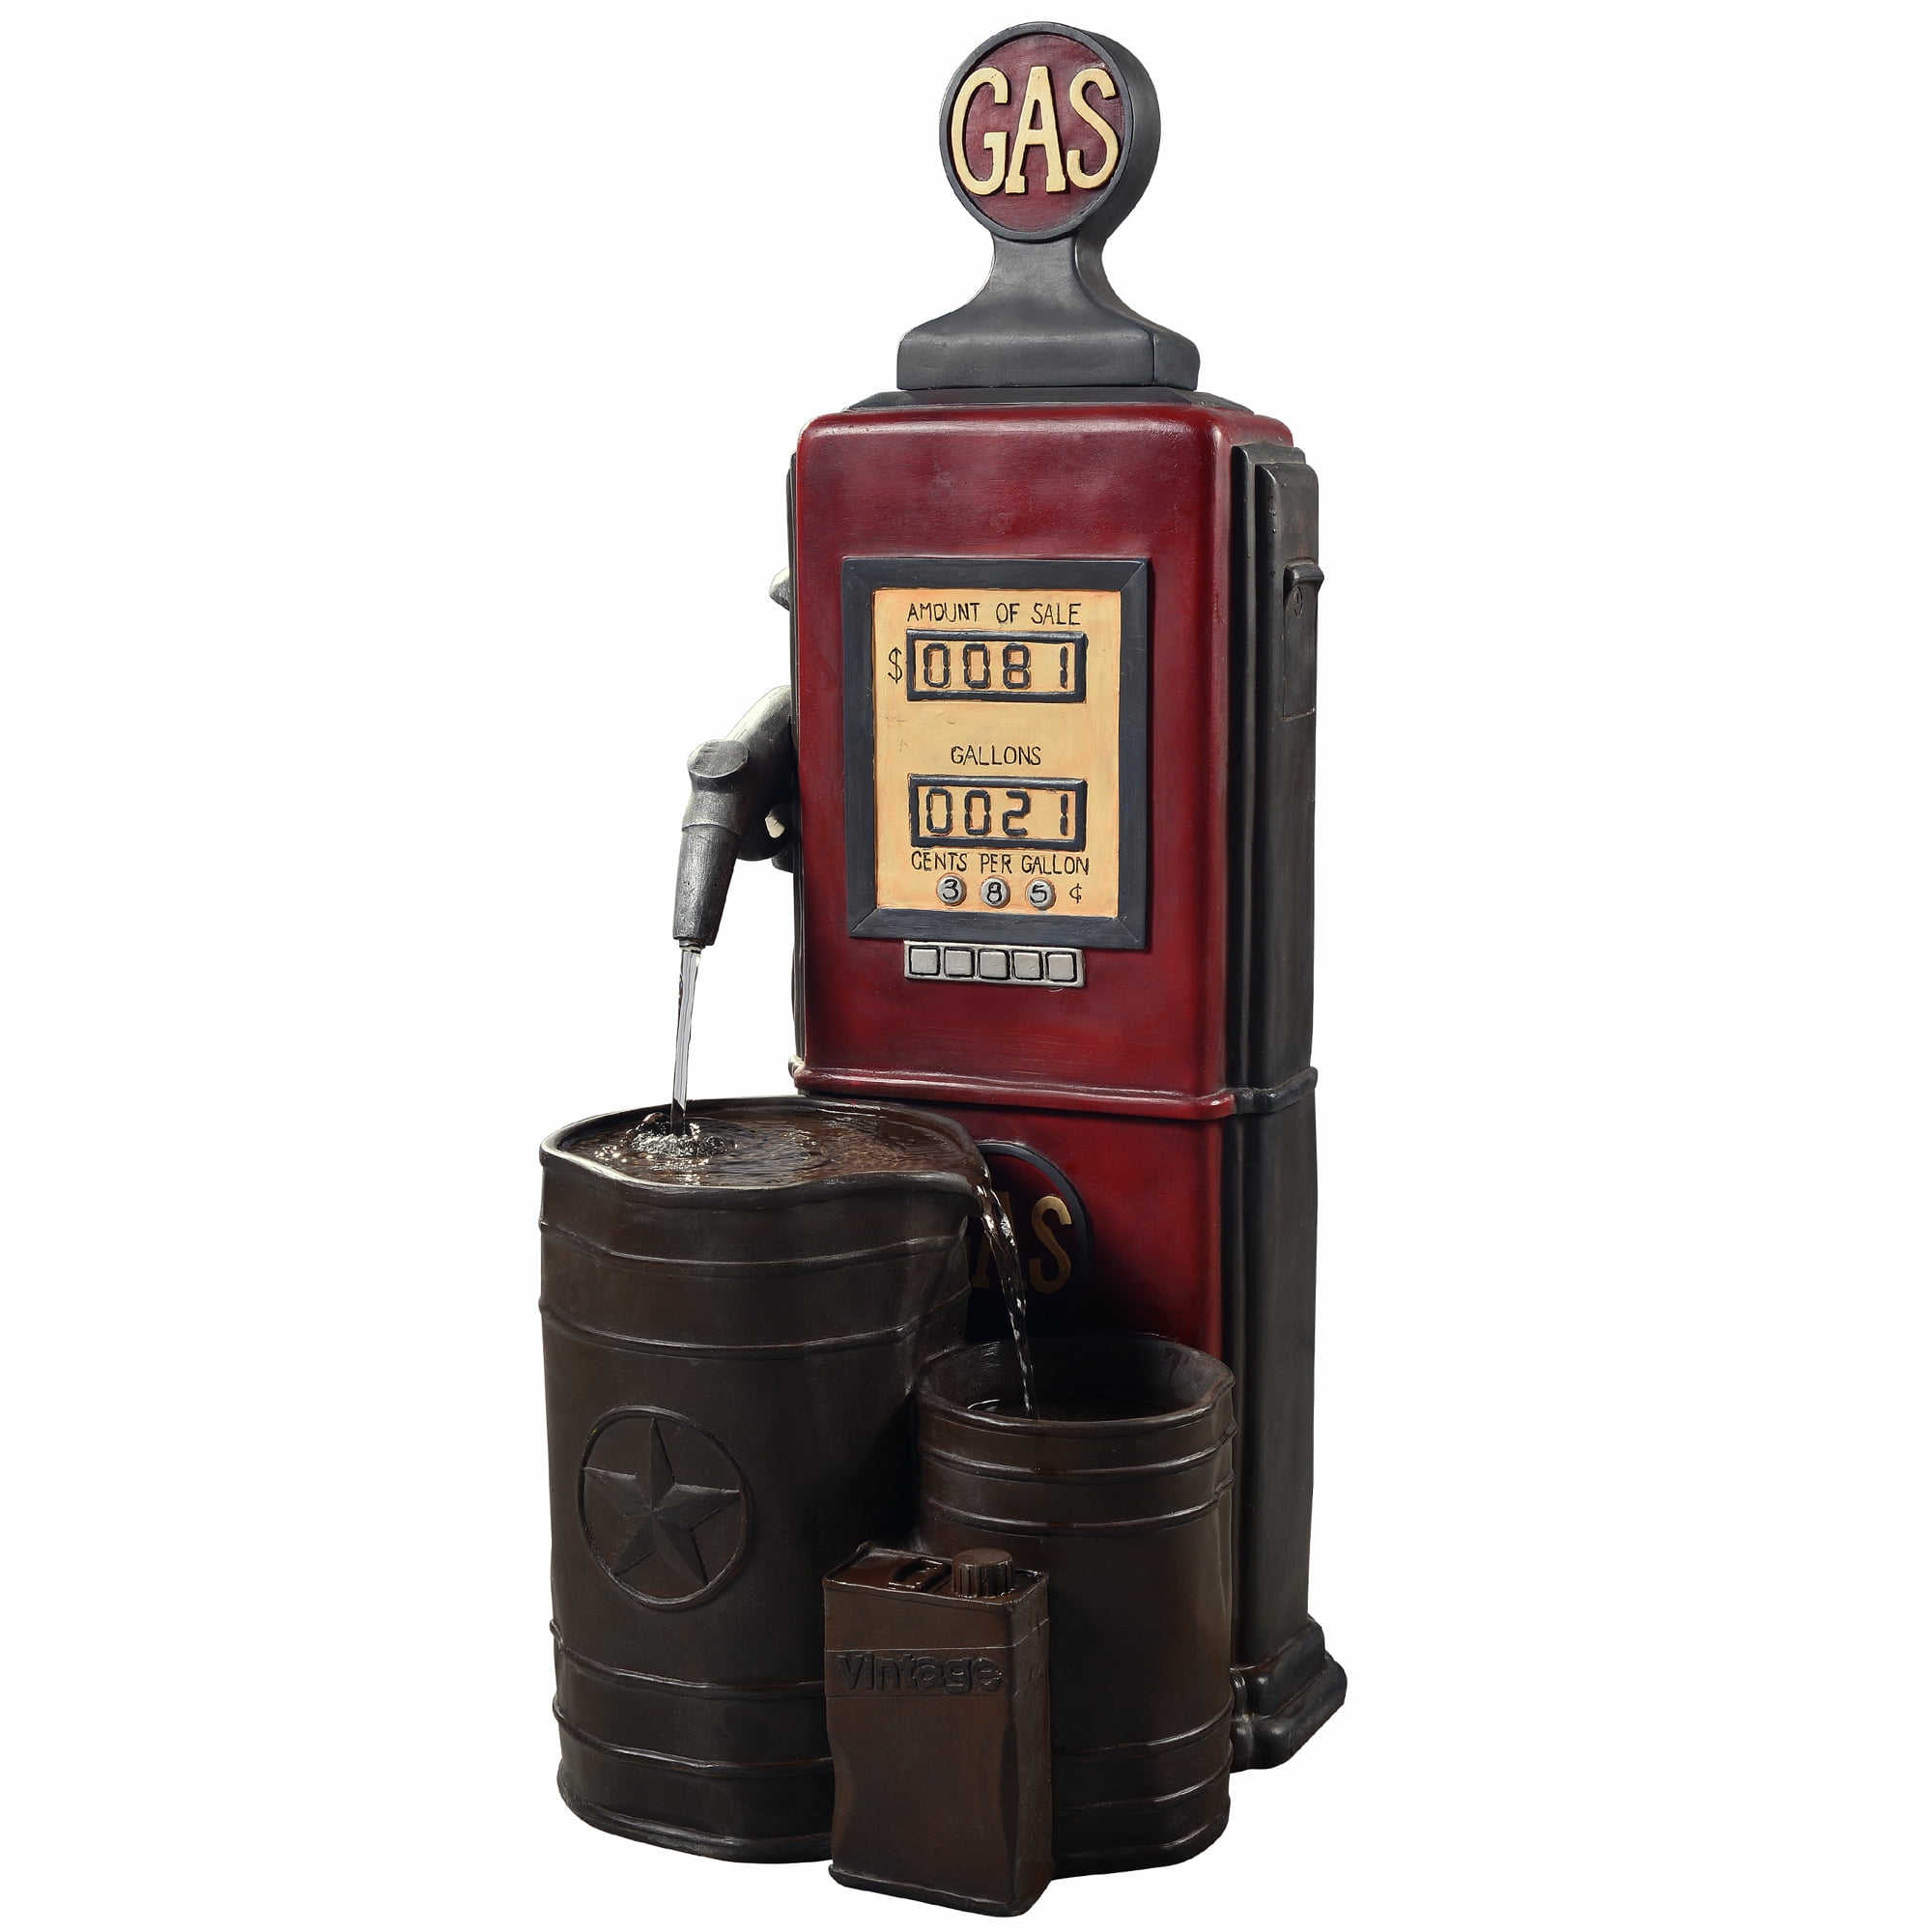 33 Height Dark Wood Peaktop 201610PT Vintage Pump & Barrel Outdoor Garden Water Fountain